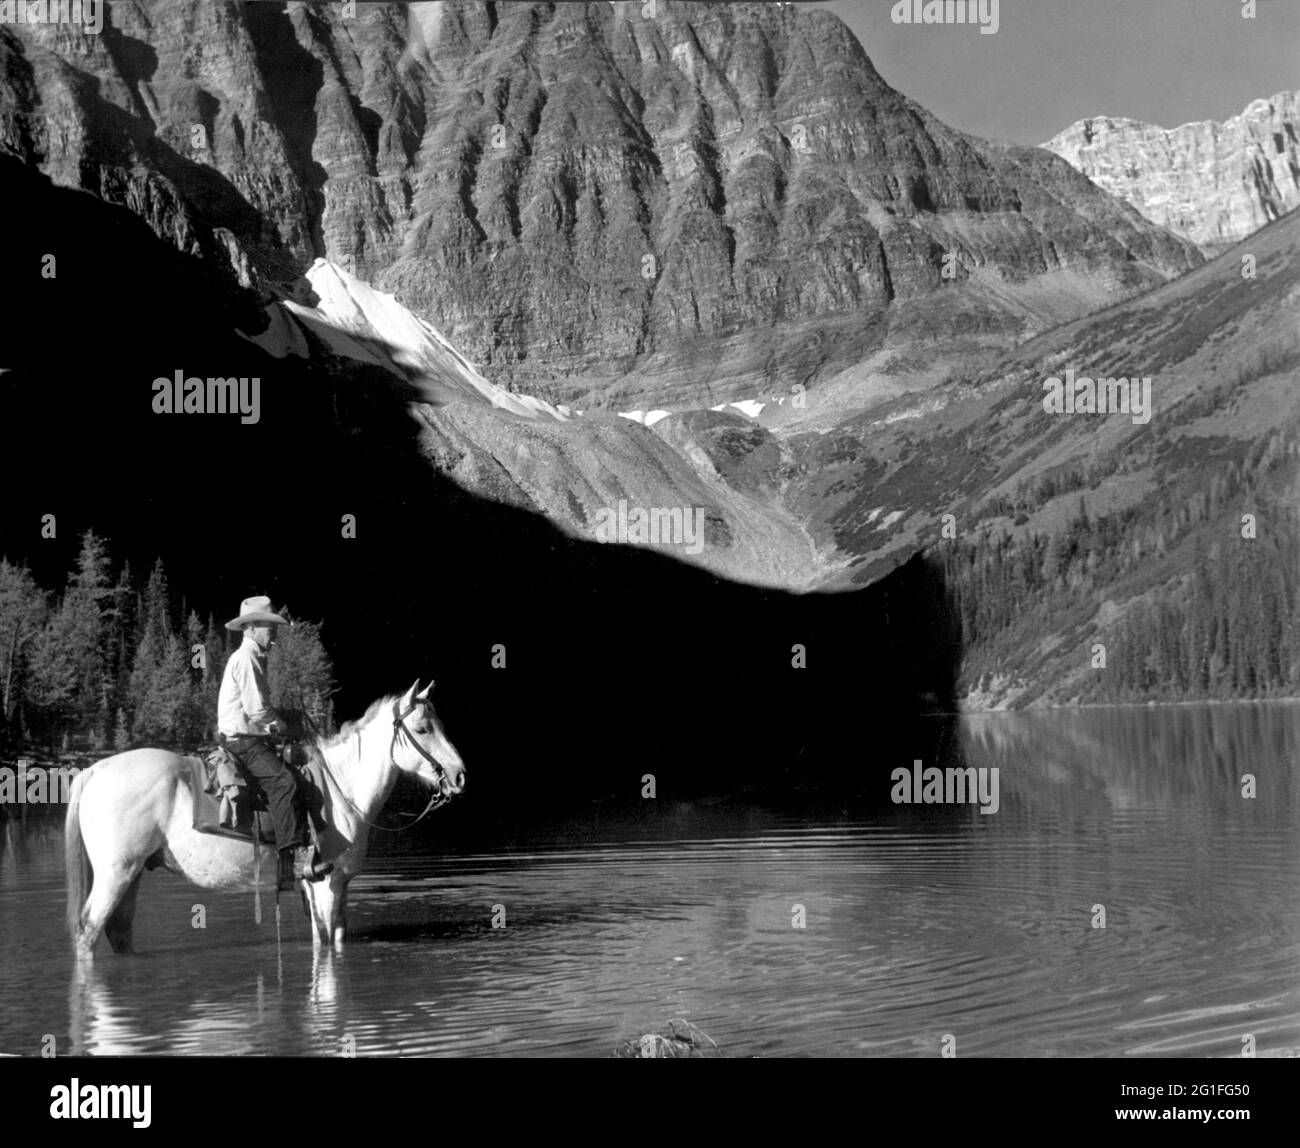 Geographie/Reisen, Kanada, Berge, Rocky Mountains, Alberta, Taylor Lake, Cowboy auf dem Pferd auf See, ZUSÄTZLICHE-RIGHTS-CLEARANCE-INFO-NOT-AVAILABLE Stockfoto